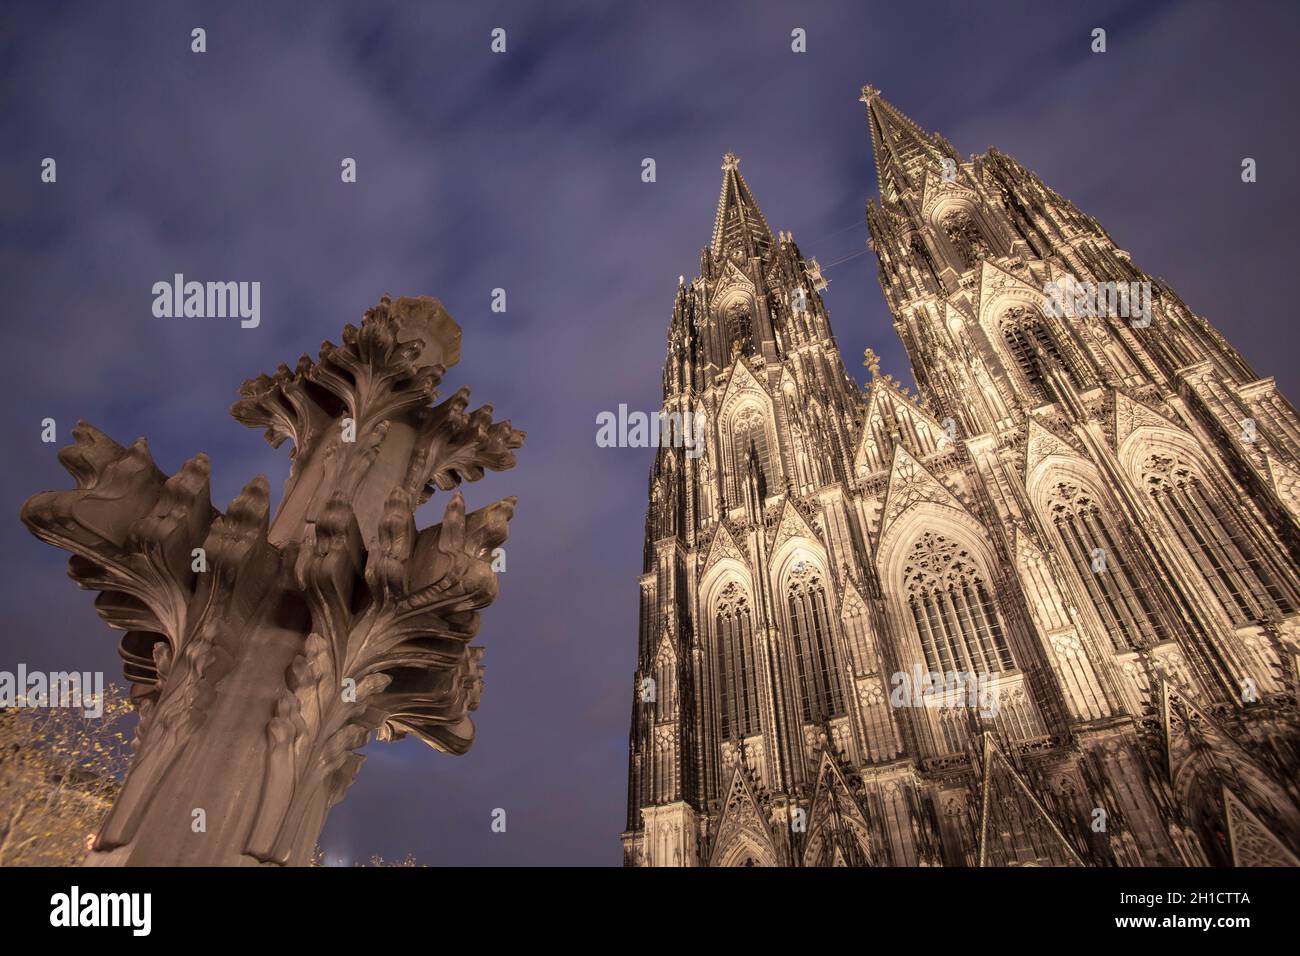 Modelo del finial delante de la fachada oeste de la catedral, los finales están en la cima de los steeples, Colonia, Alemania. Modell der Kreuzblume vor Foto de stock